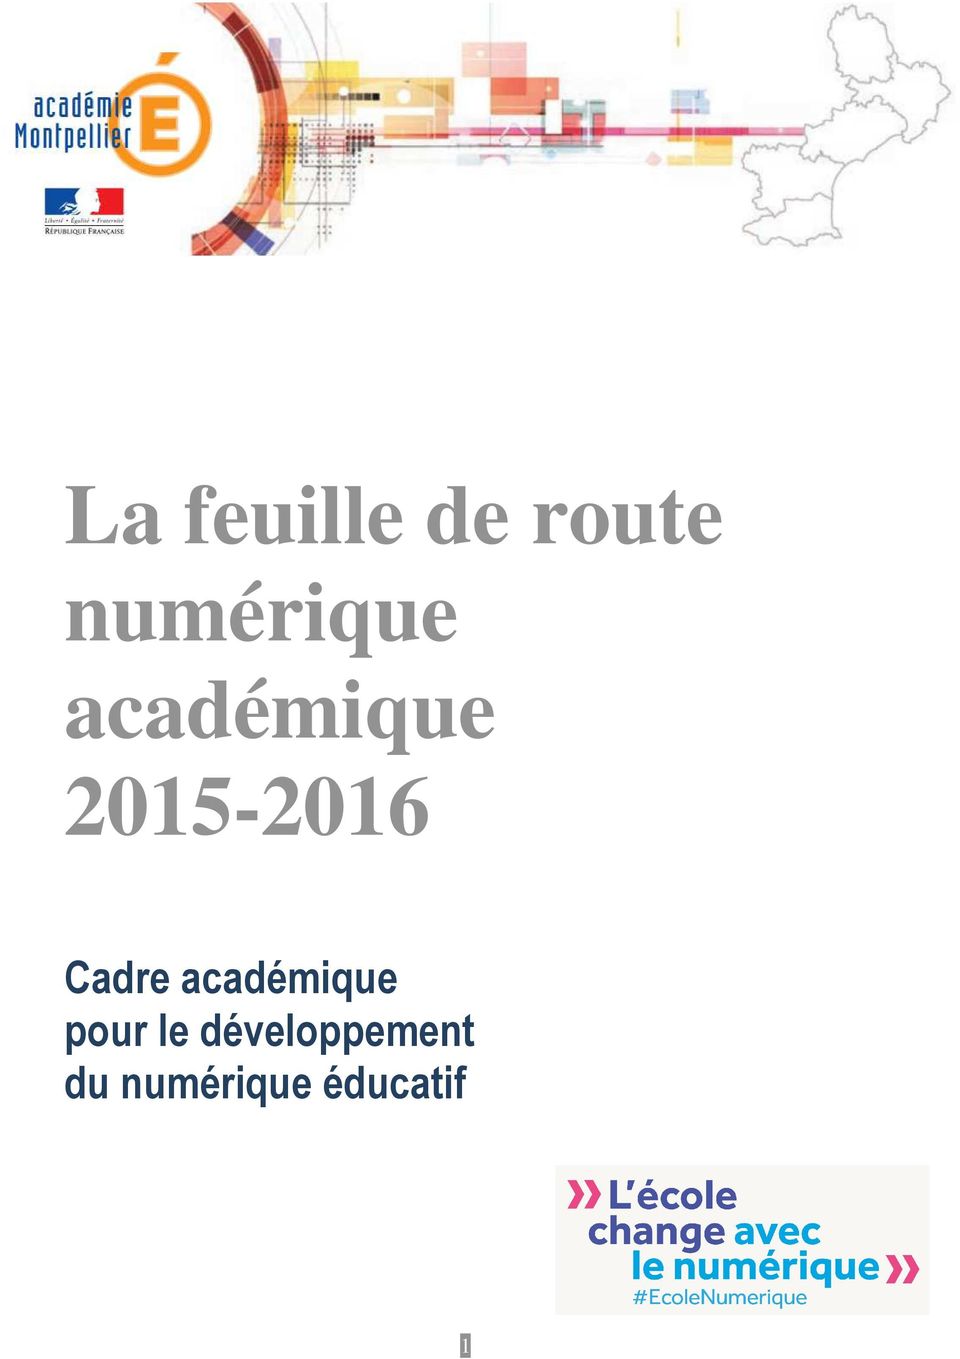 2015-2016 Cadre académique